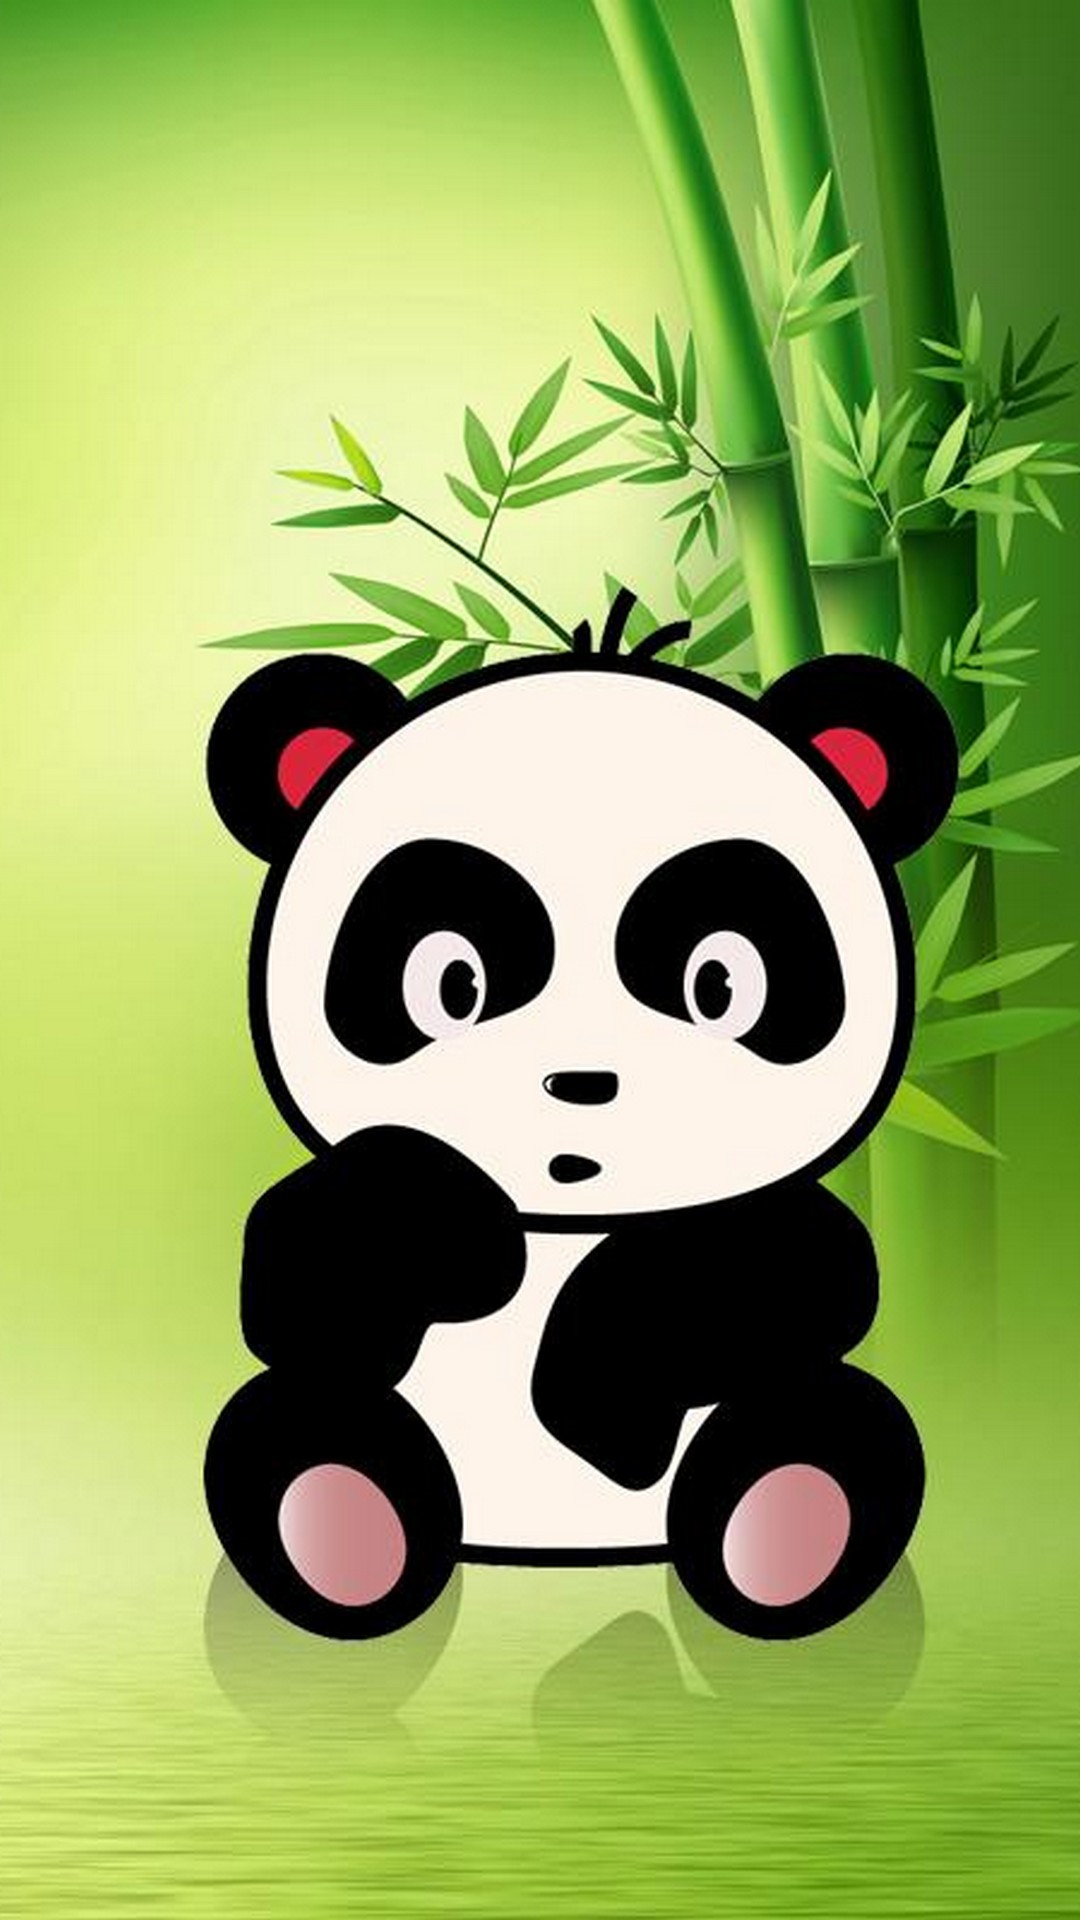 iPhone X Cute Panda Wallpaper 1080x1920